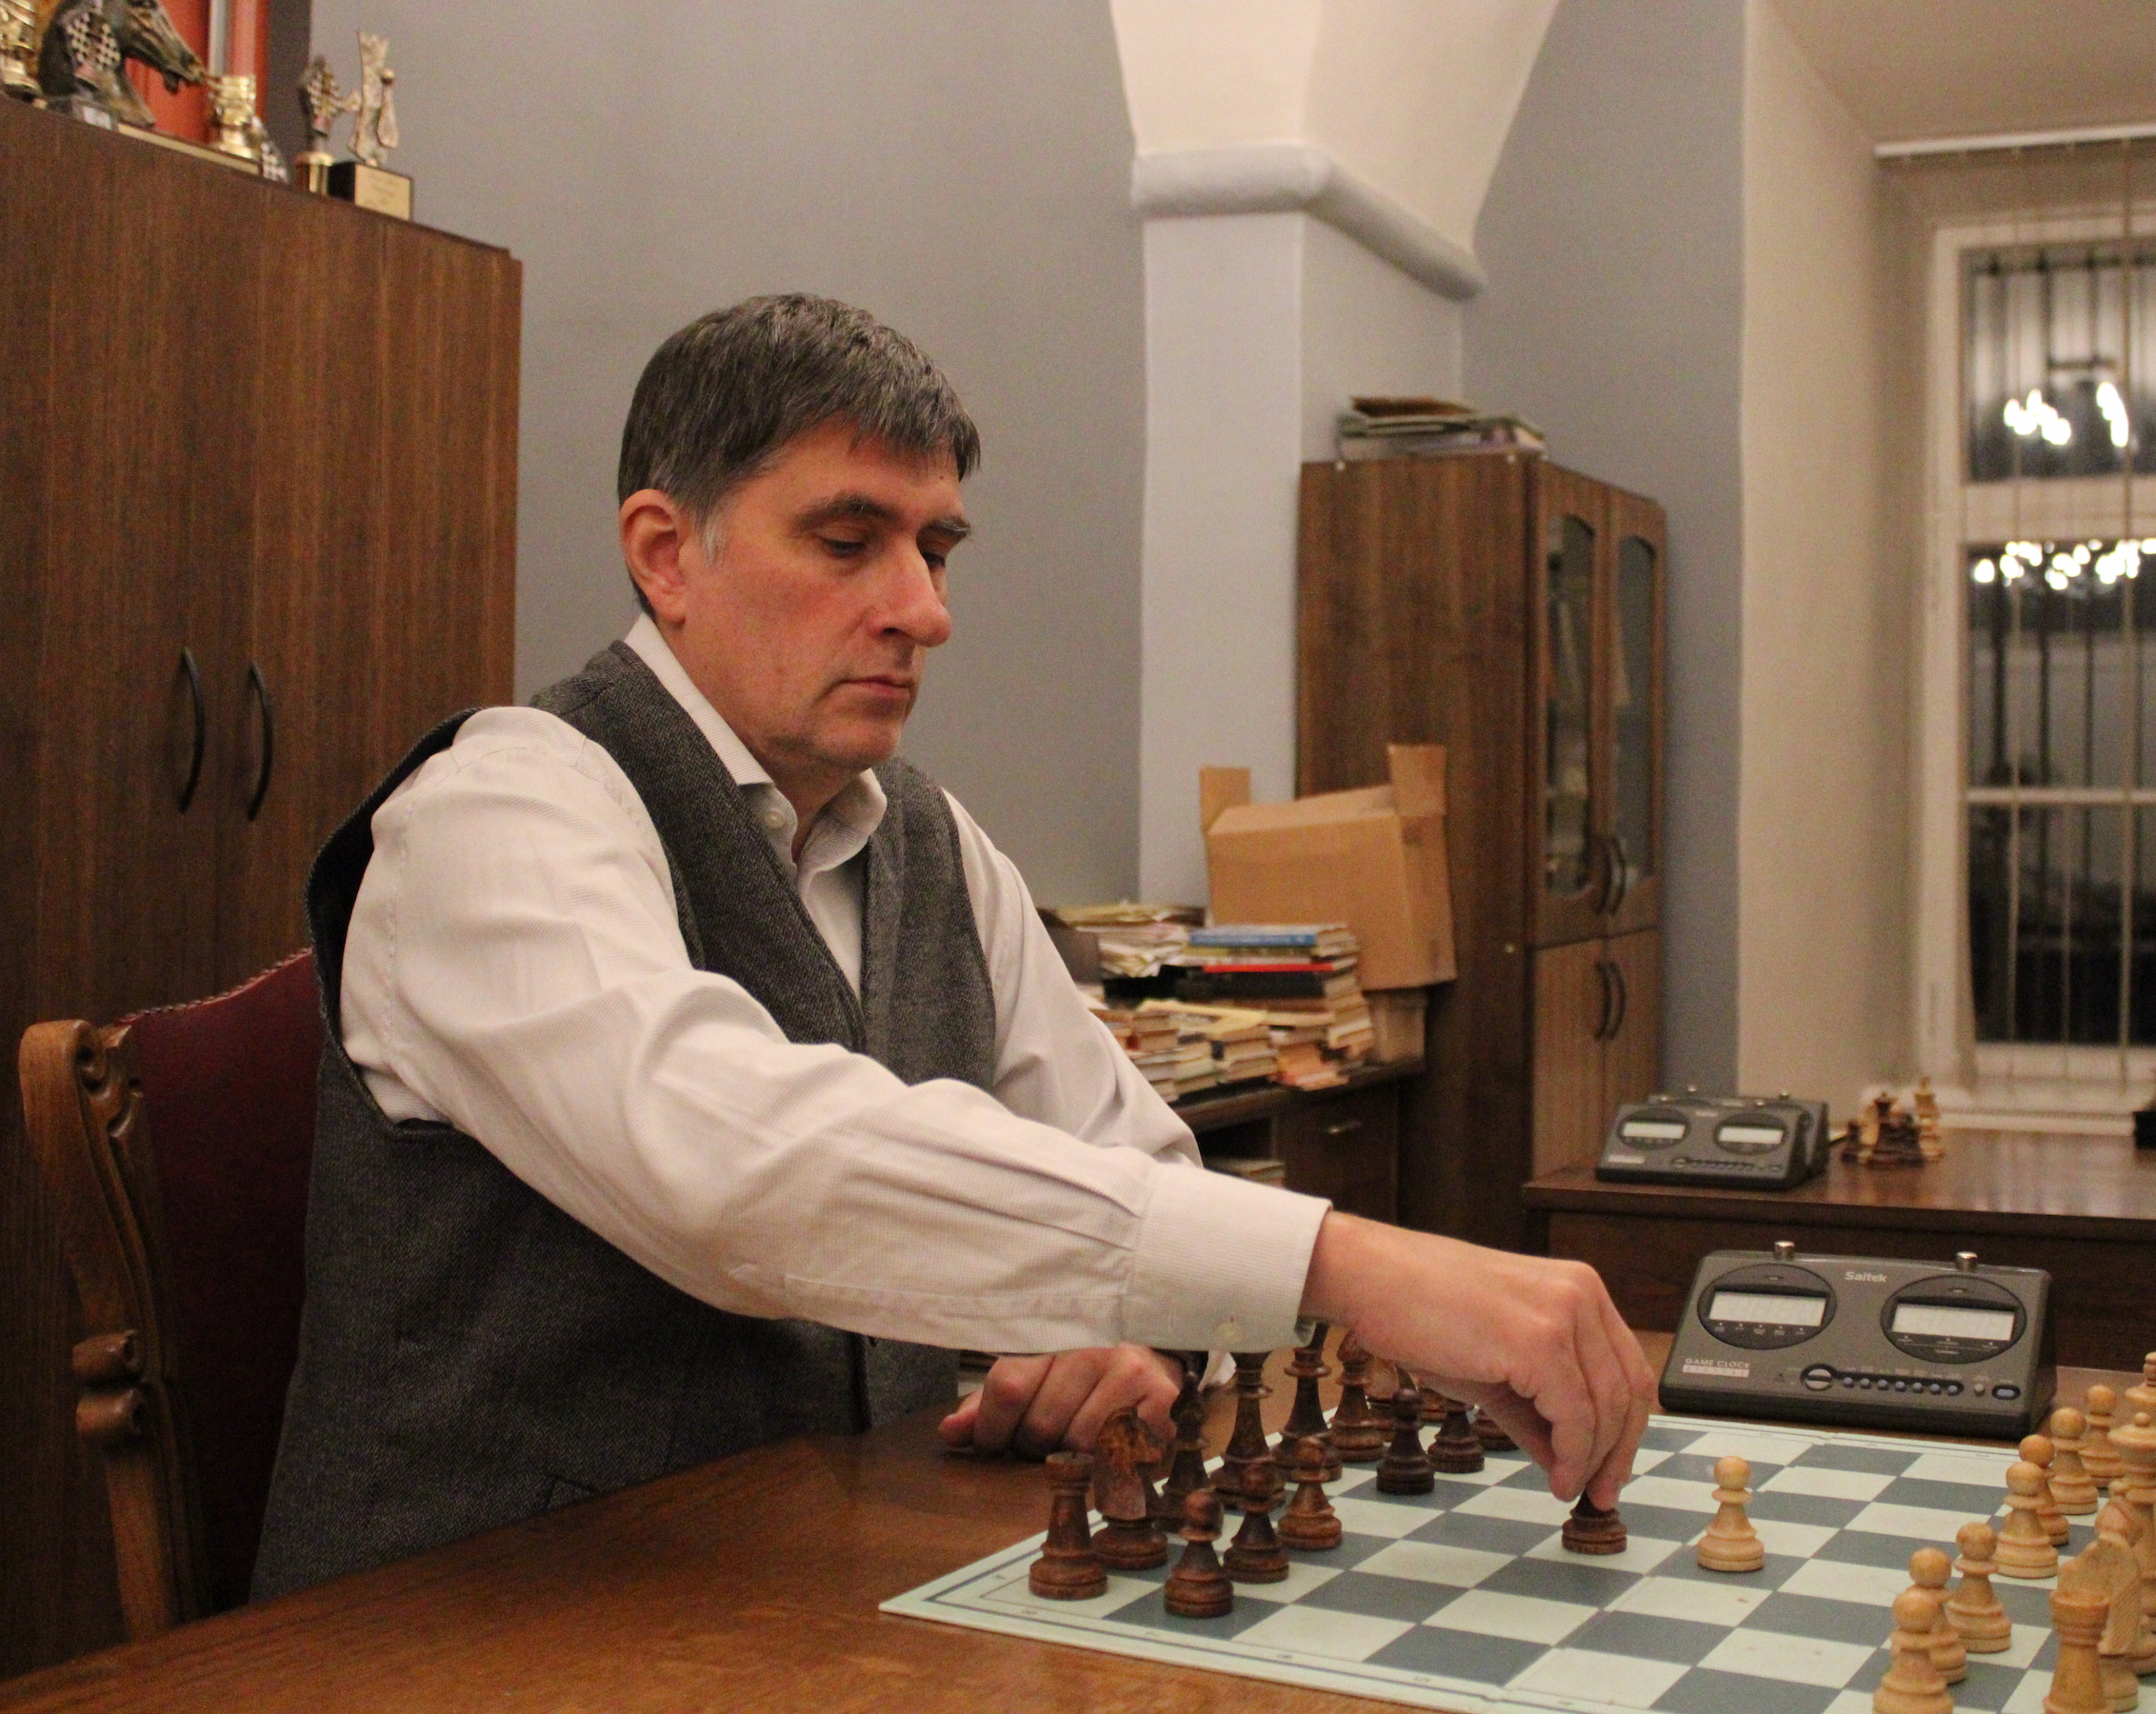 Шахматный тренер спокойно делает ход в шахматном кабинете